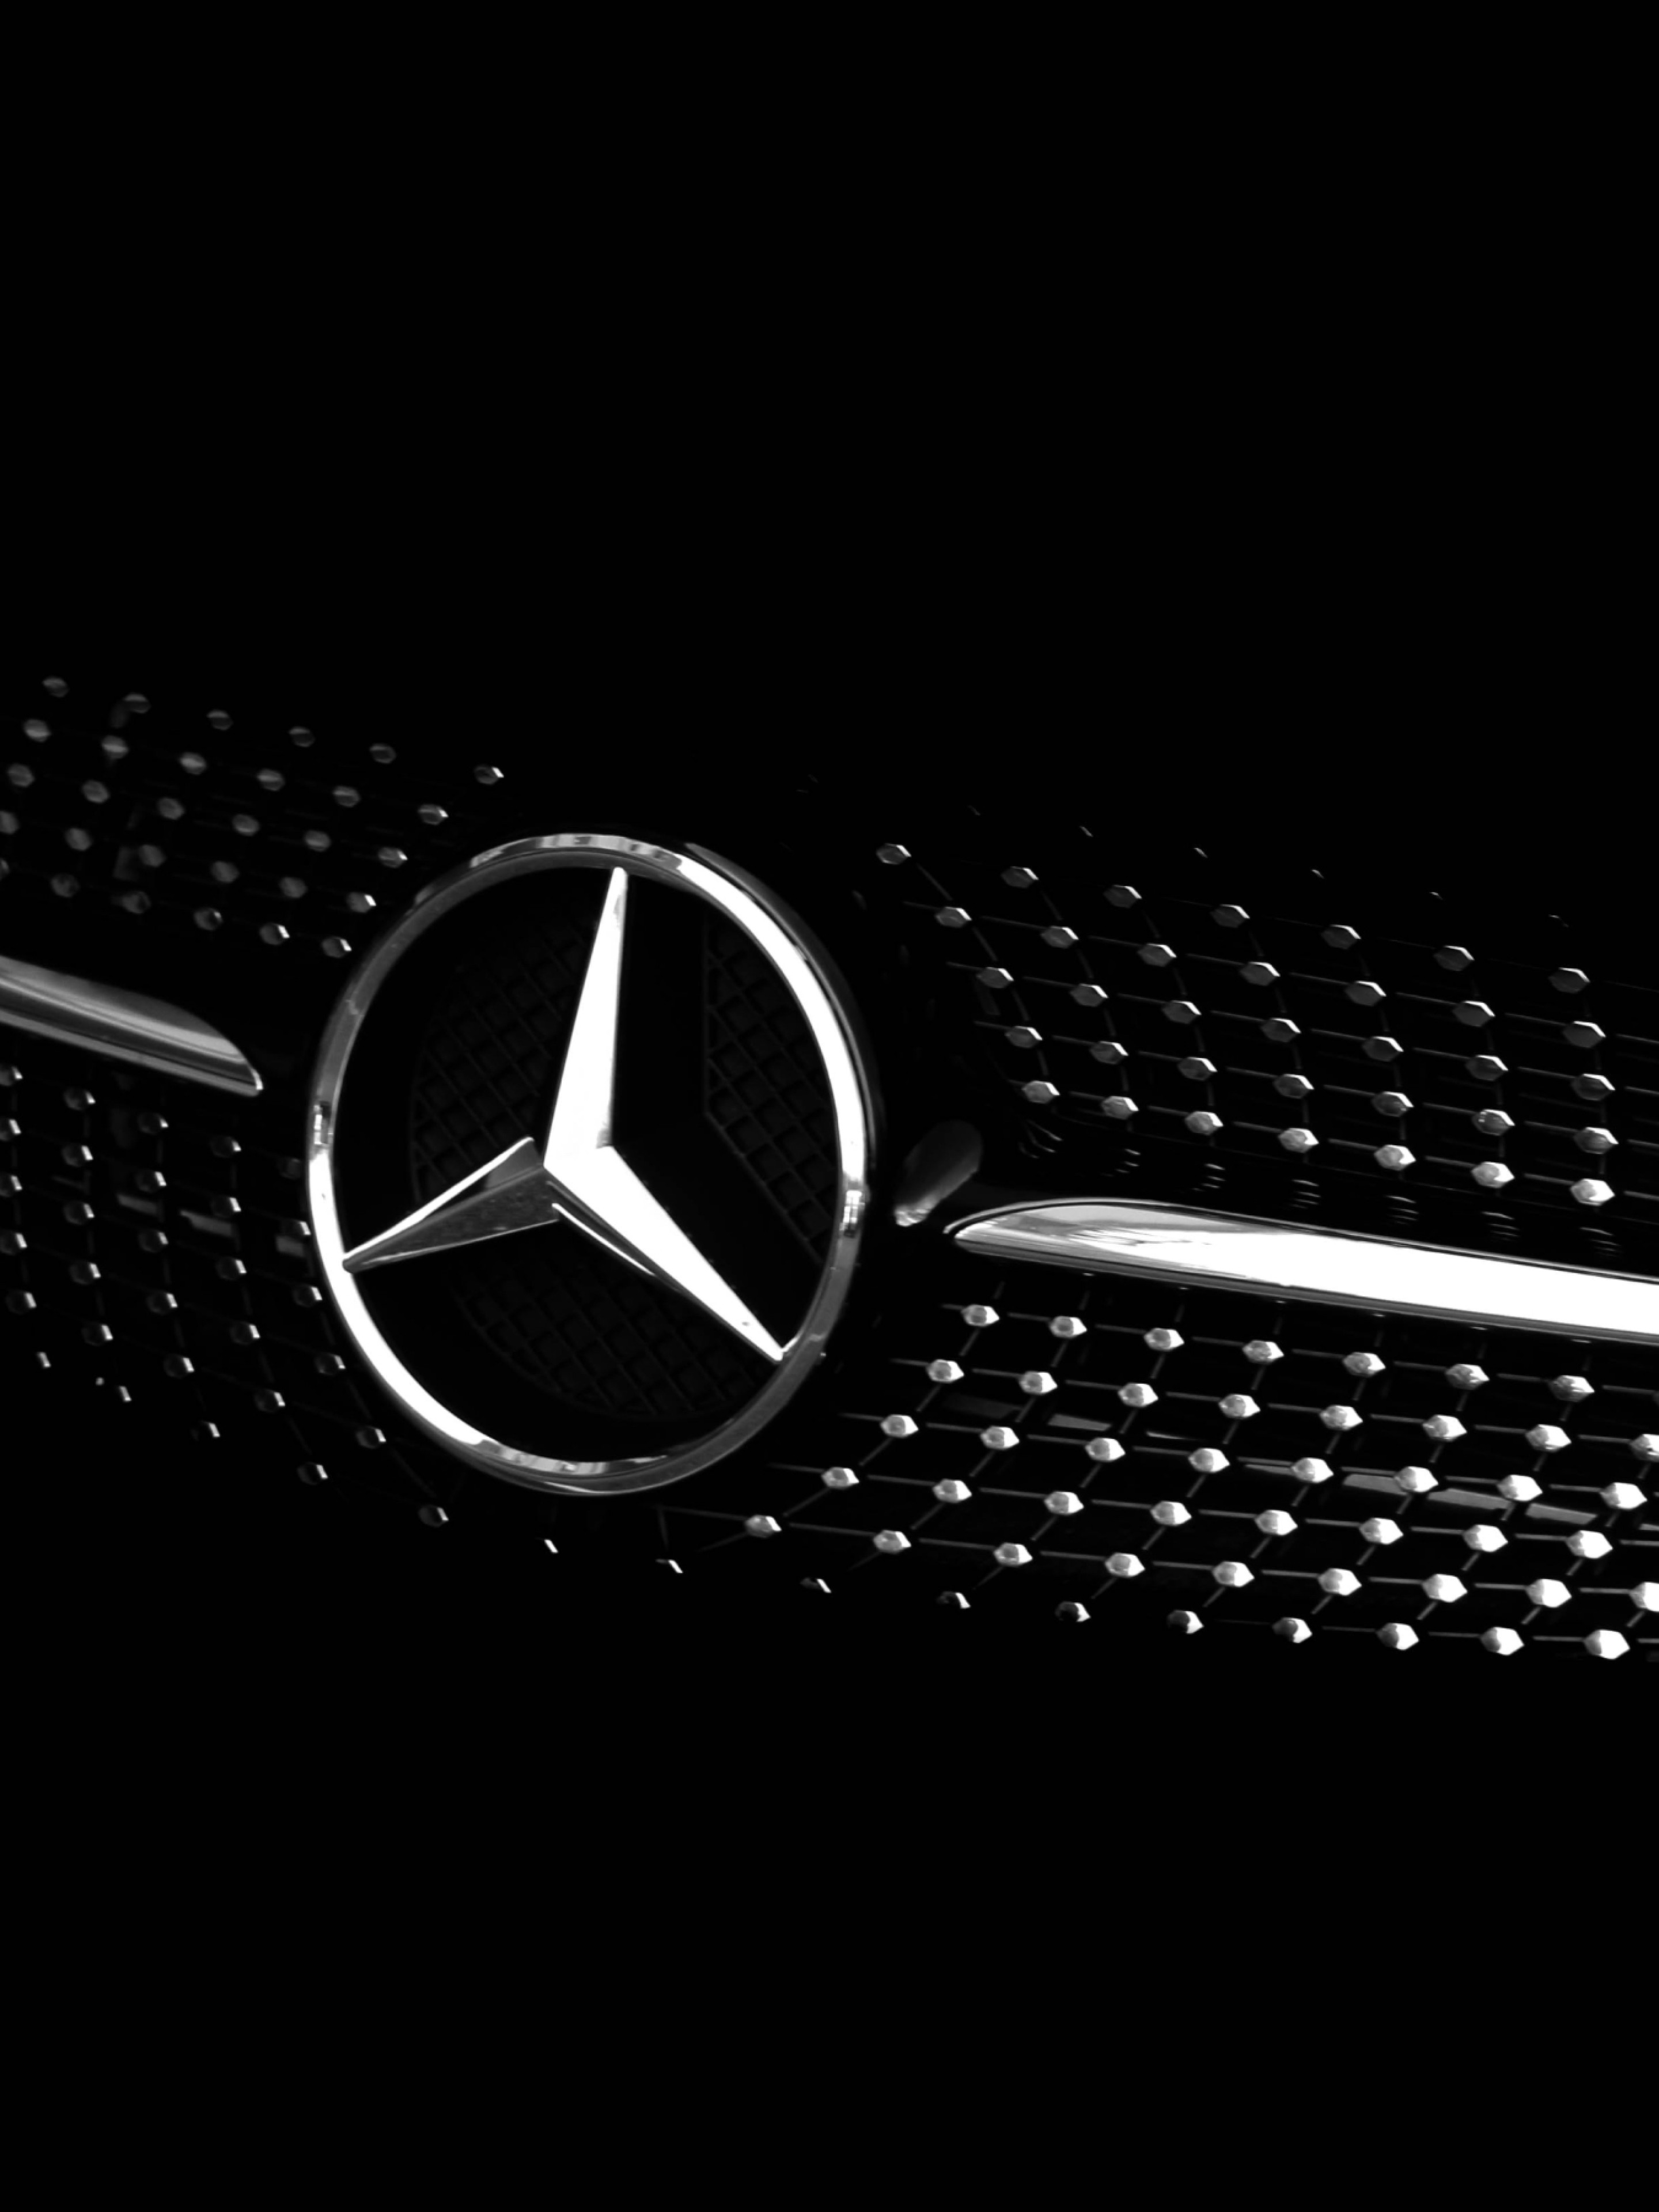 Dunkles Bild von einem modernen Mercedes Diamant-Kühlergrill